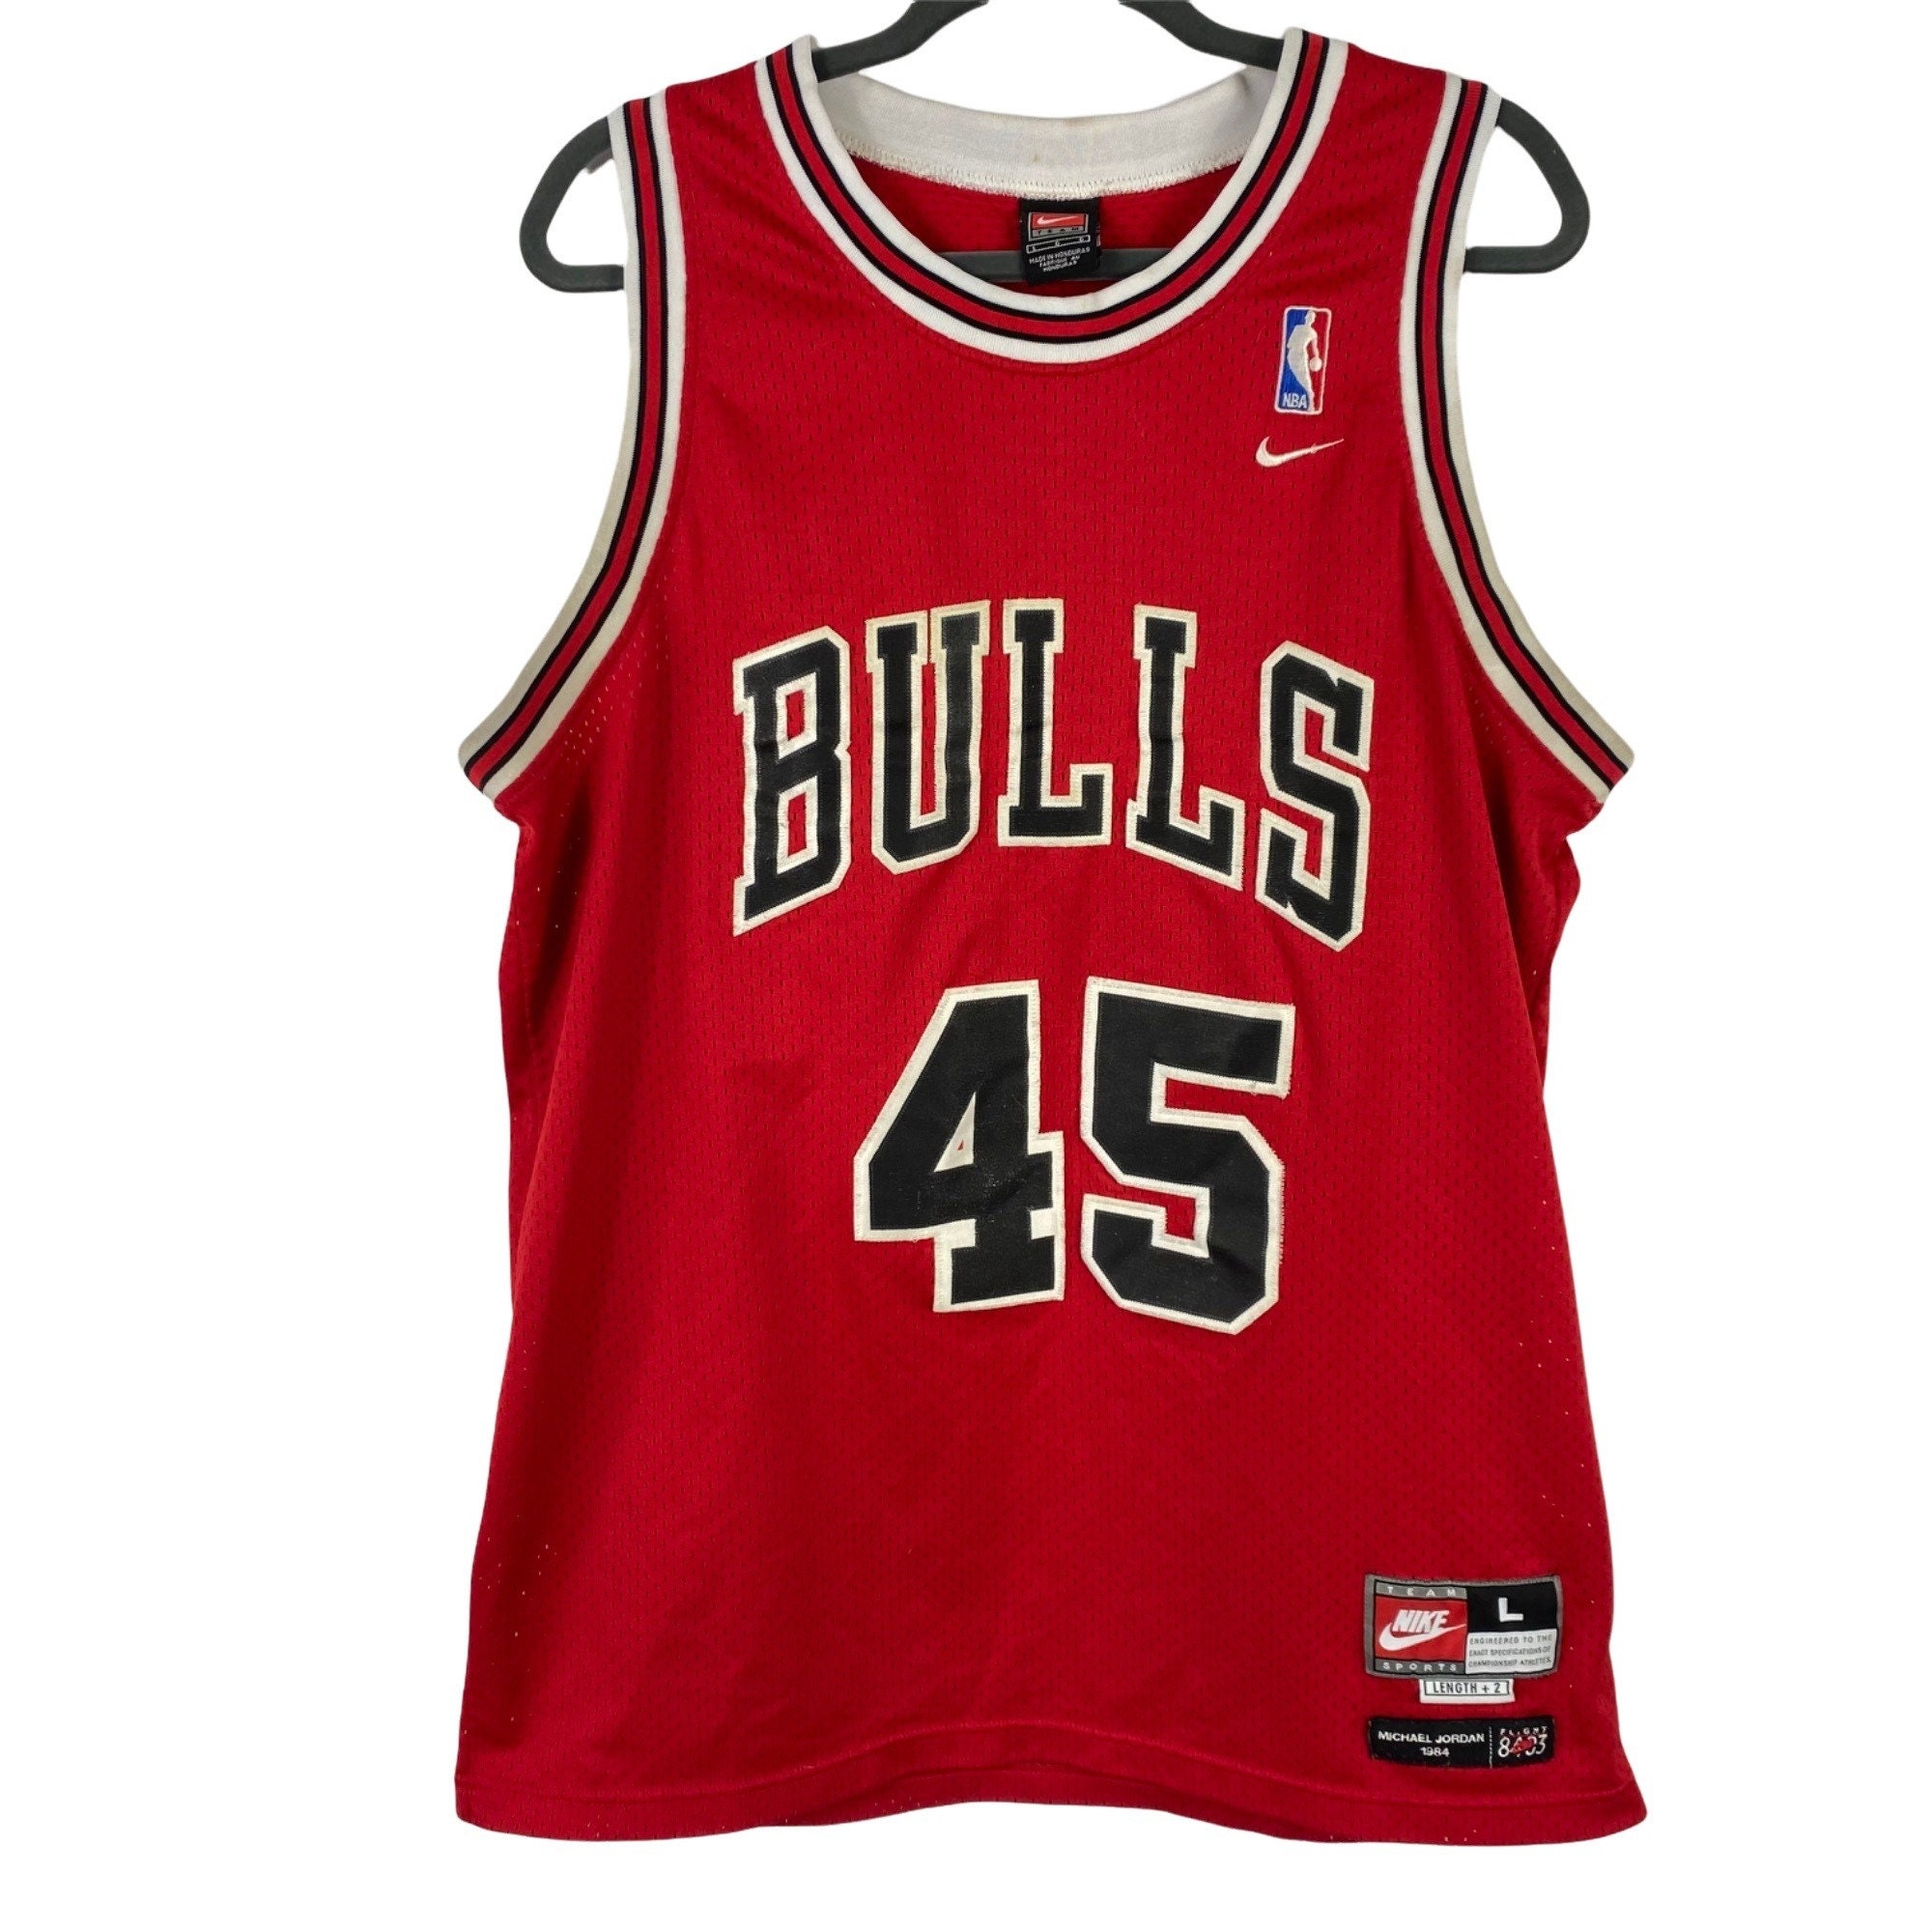 Nike Bulls Michael Jordan Flight 8403 Home Jersey